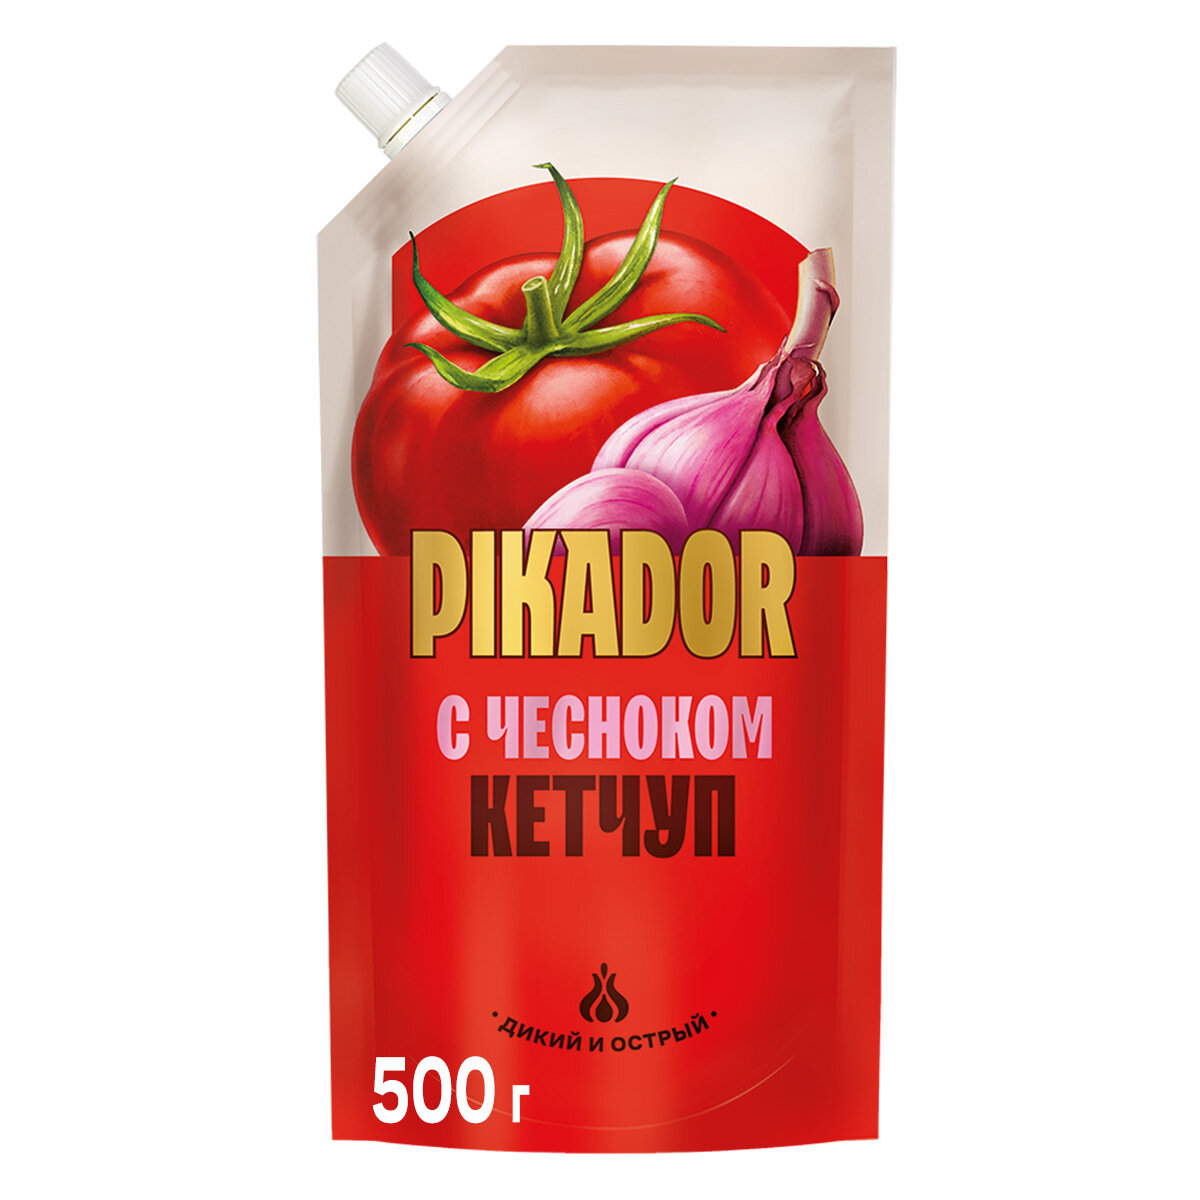 Pikador - кетчуп Чесночный, 500 гр.